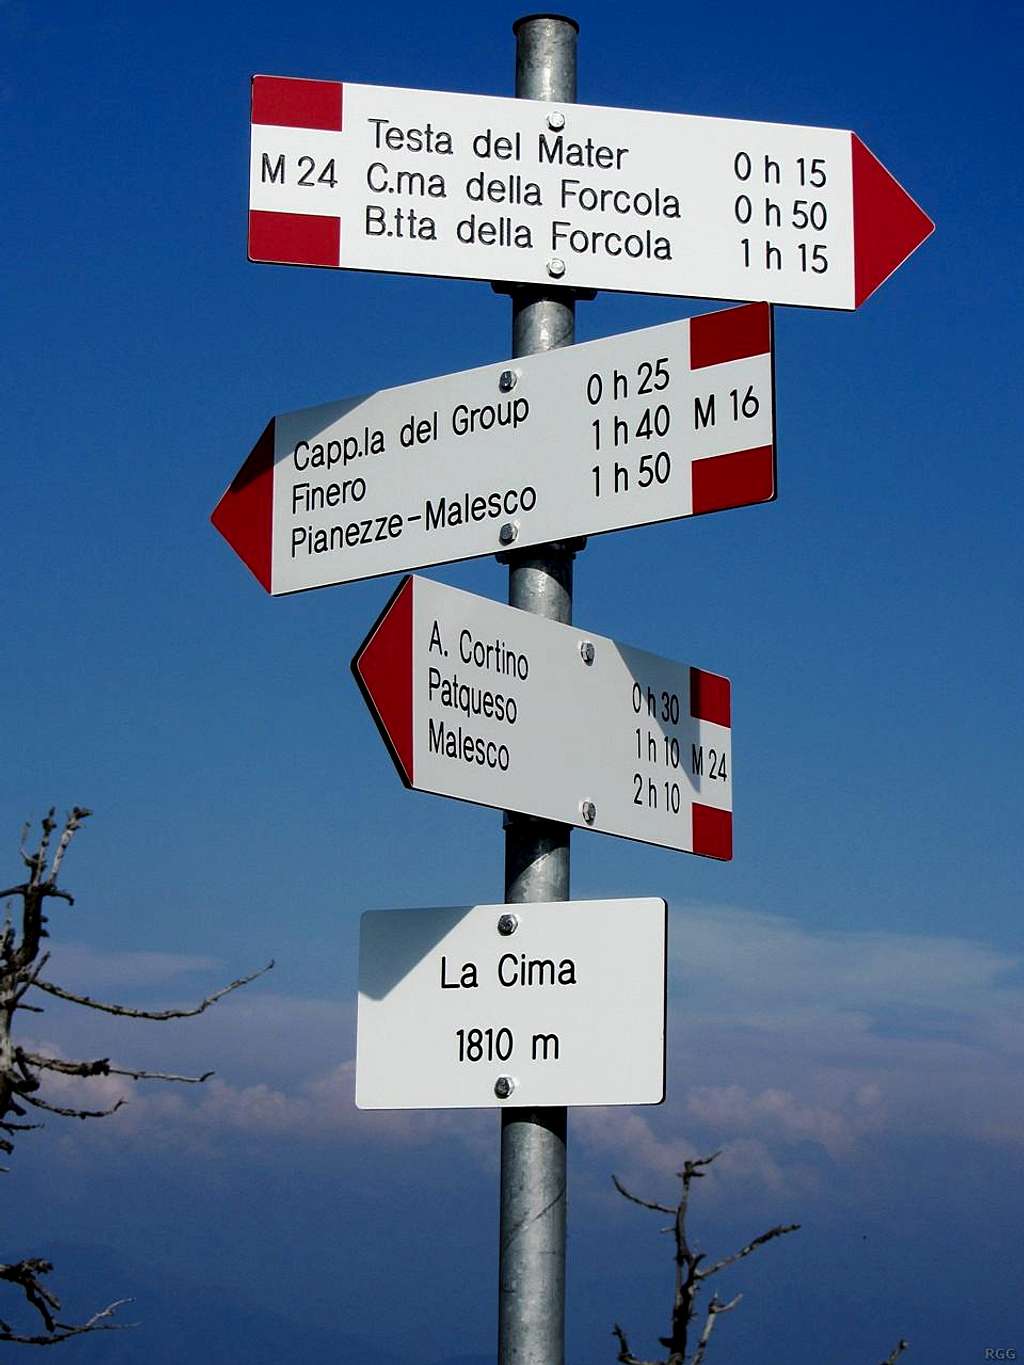 Signpost at La Cima